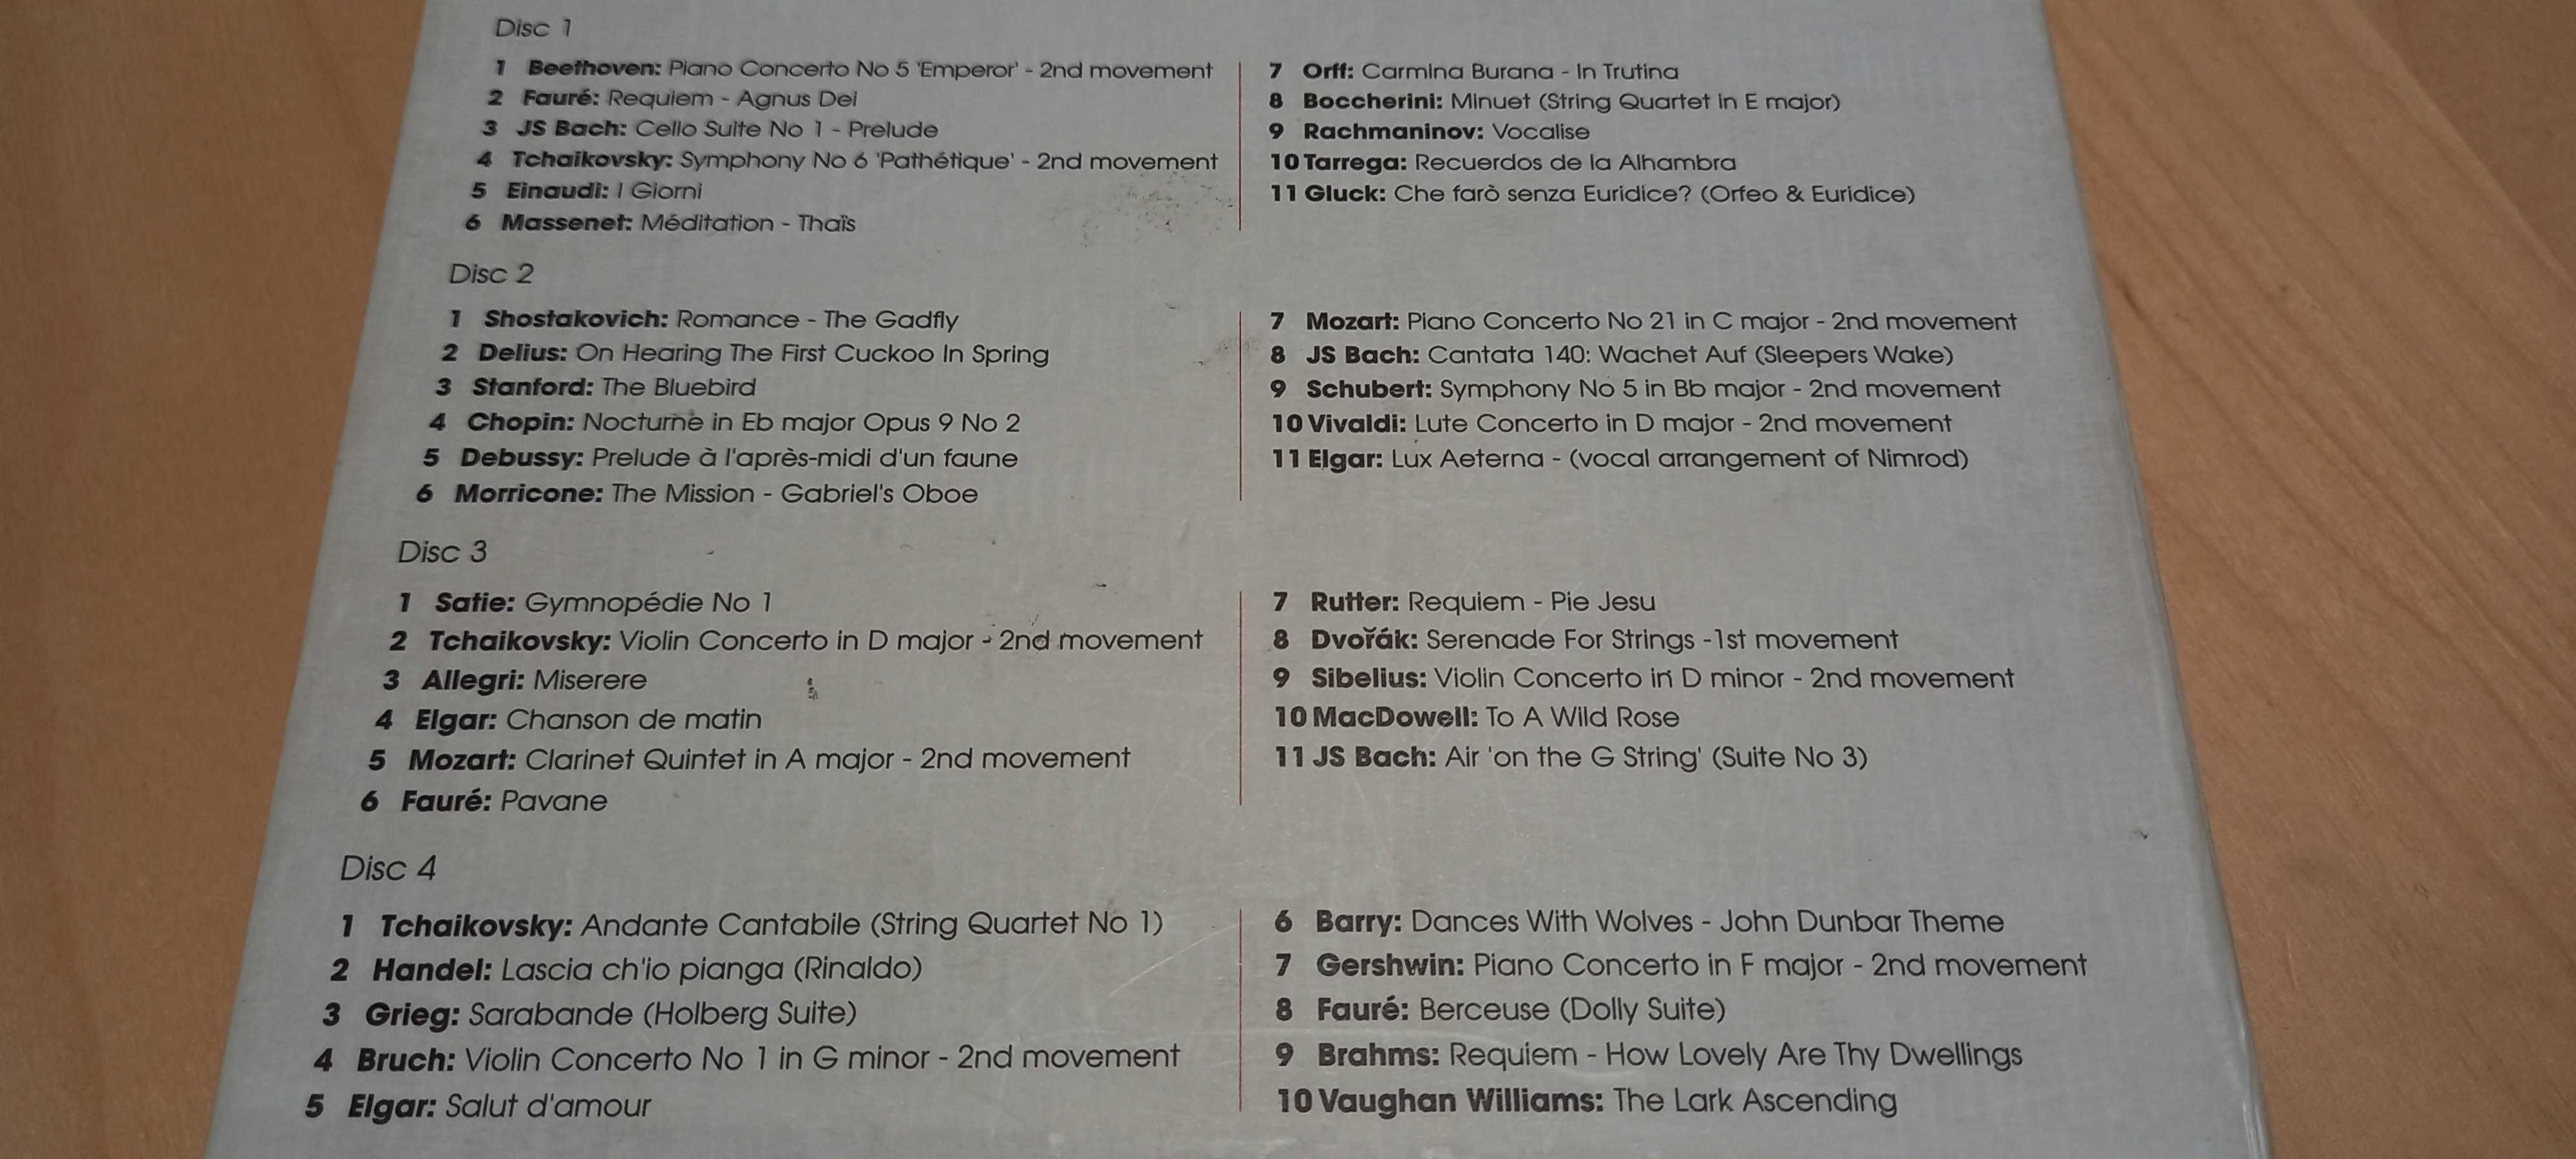 4xCD Classic FM Smooth Classics 2003 muzyka klasyczna